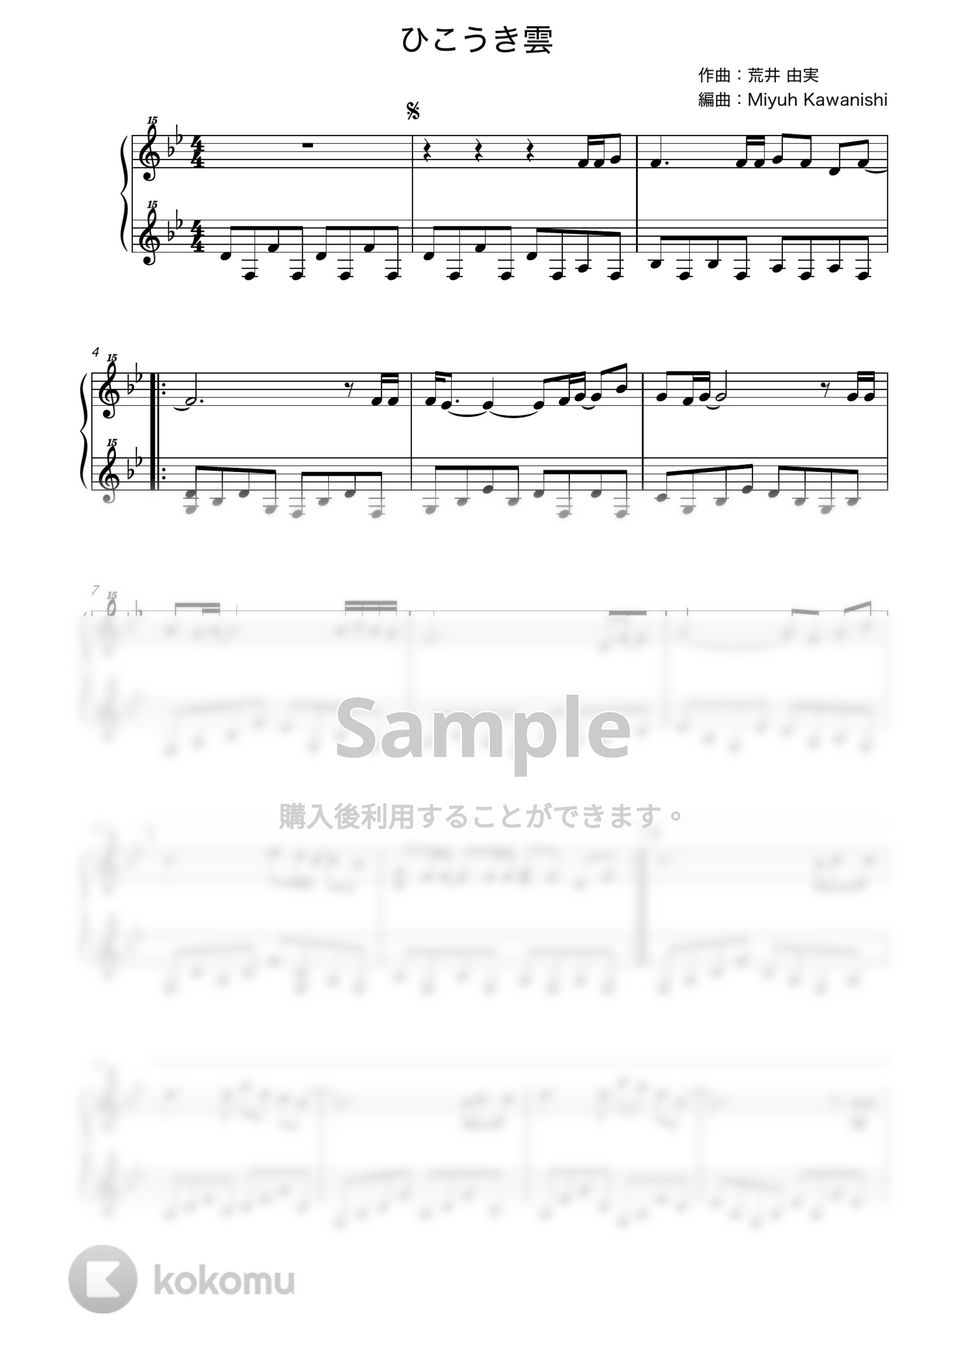 荒井由実 - ひこうき雲 (風立ちぬ / トイピアノ / 32鍵盤) by 川西三裕